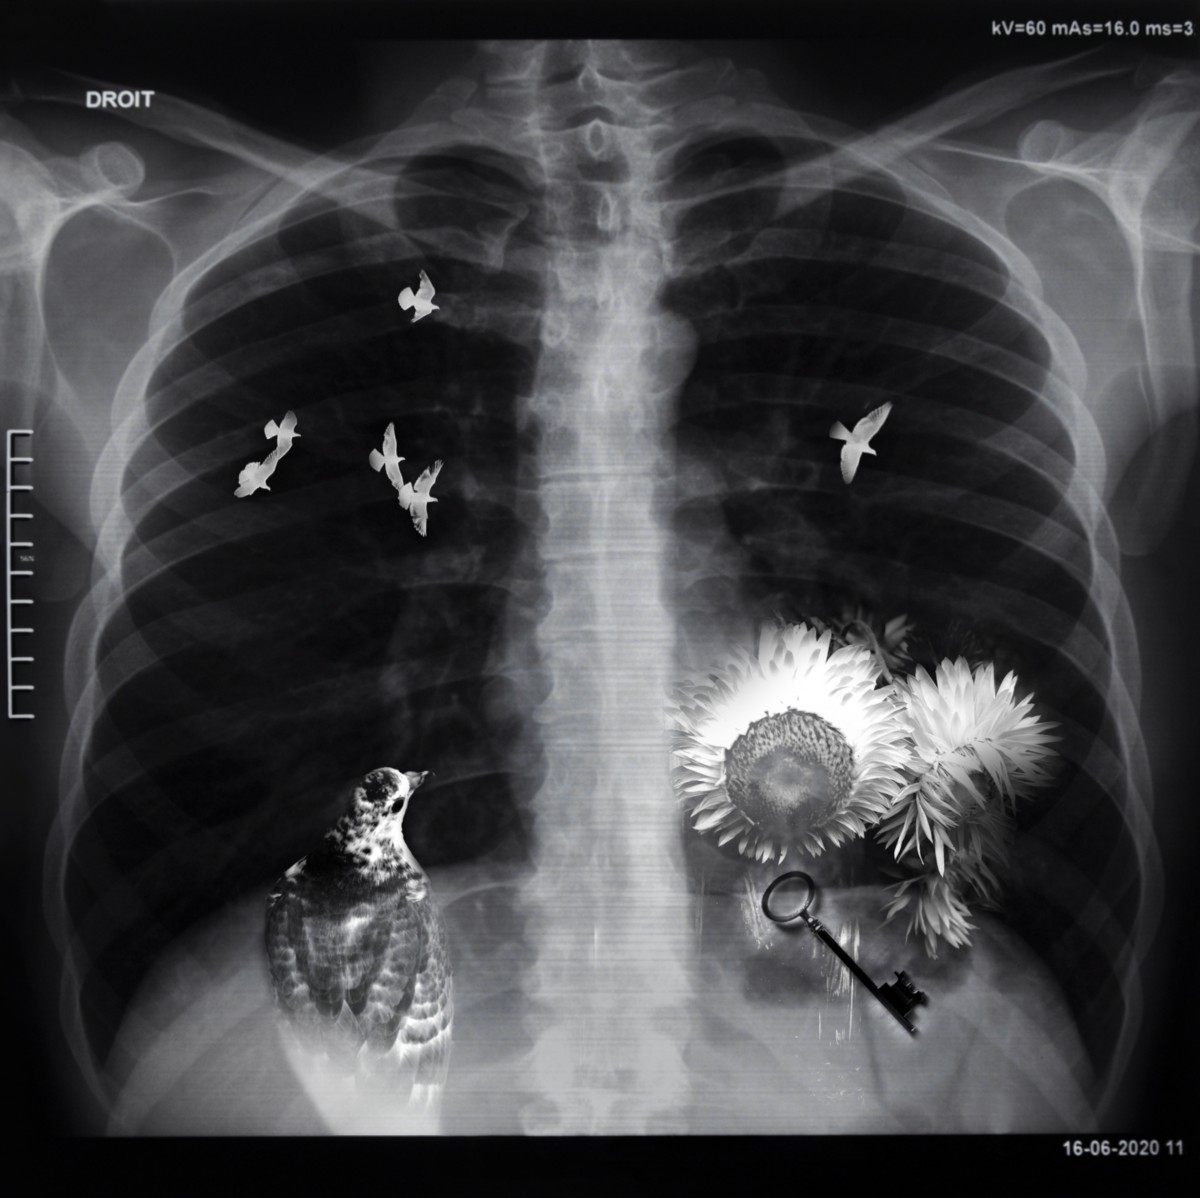 Radiographie médicale d'un torse avec un oiseau, des fleurs et une clé qui apparaissent dedans